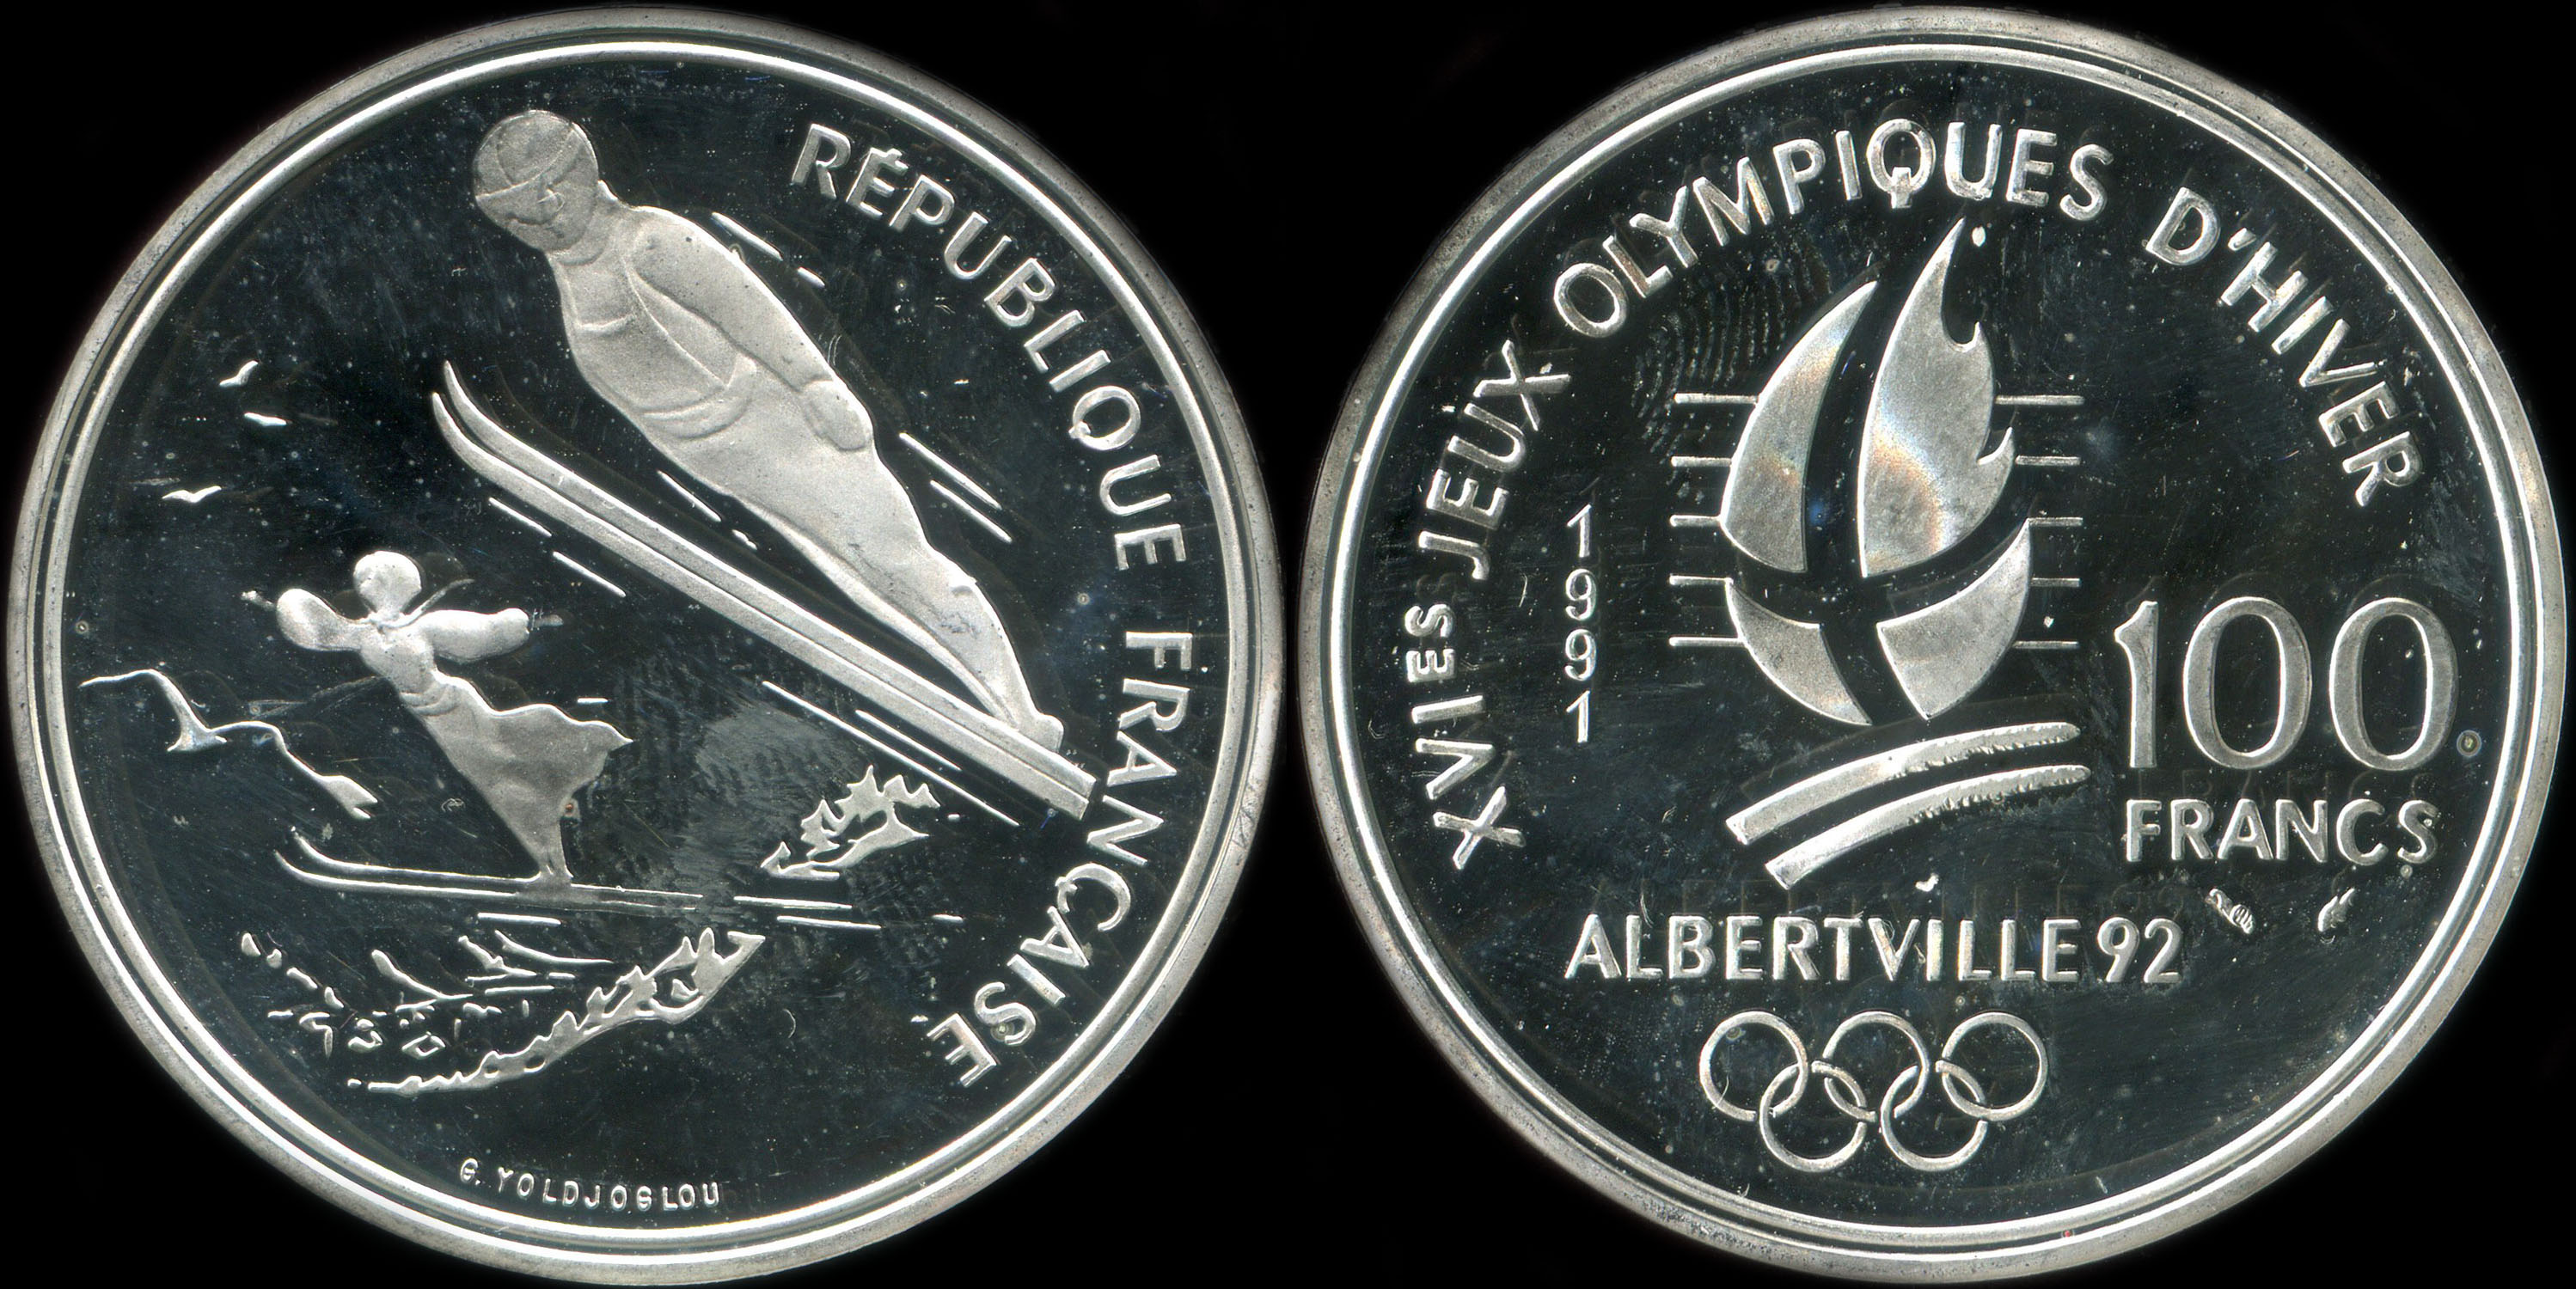 Pice de 100 francs 1991 - XVIes Jeux Olympiques d'Hiver - Albertville 92 - Saut  Ski - Belle Epoque